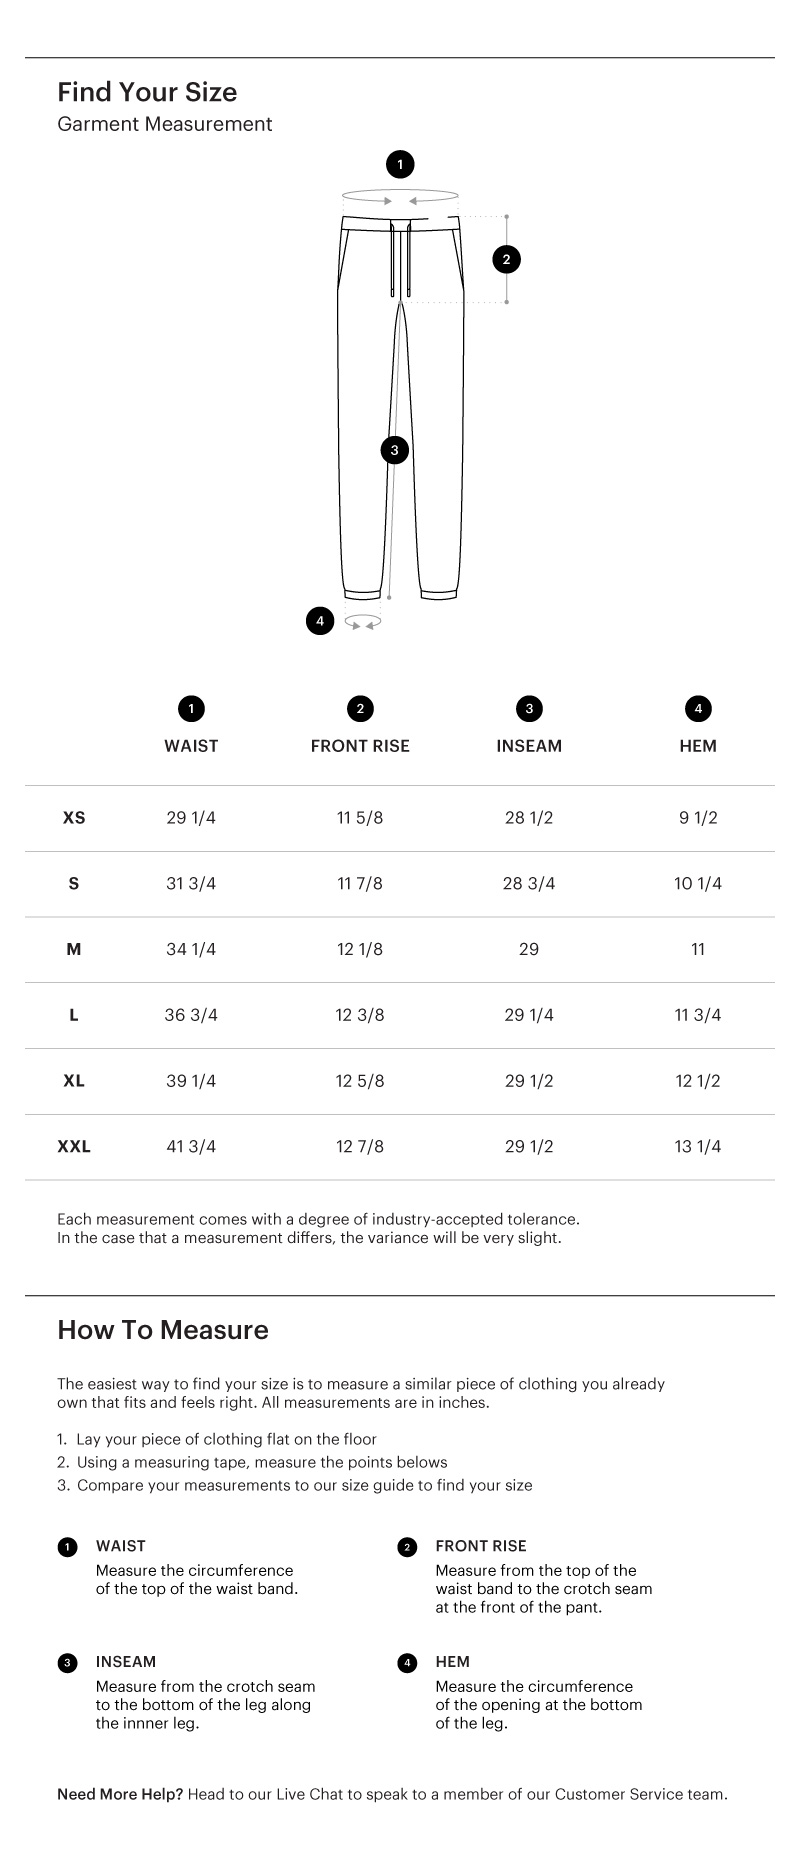 HSC 2021 Uniform Sweatpant Size Guide